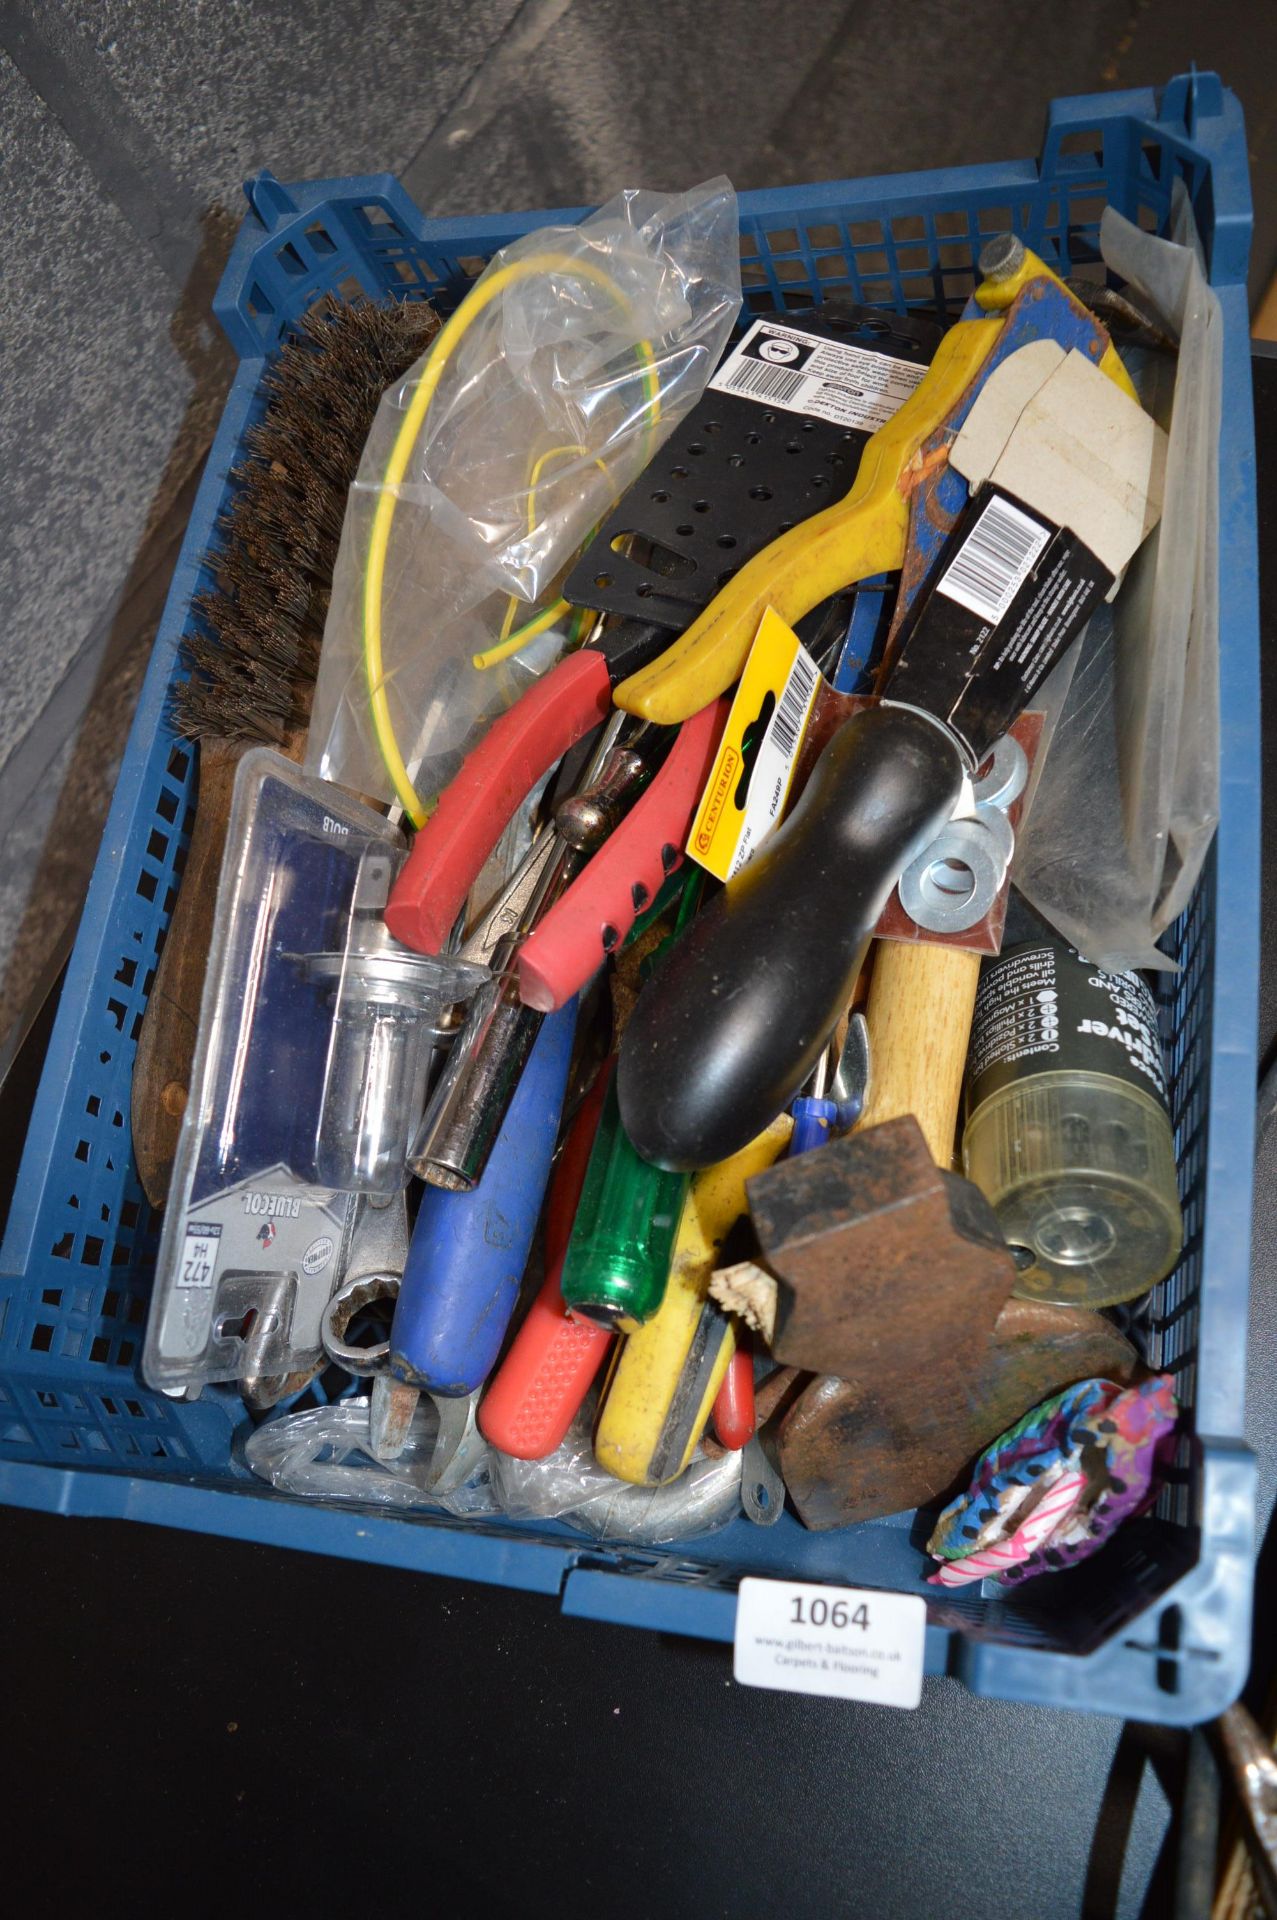 Mixed Lot of Tools Including Screwdrivers, Drills, etc.